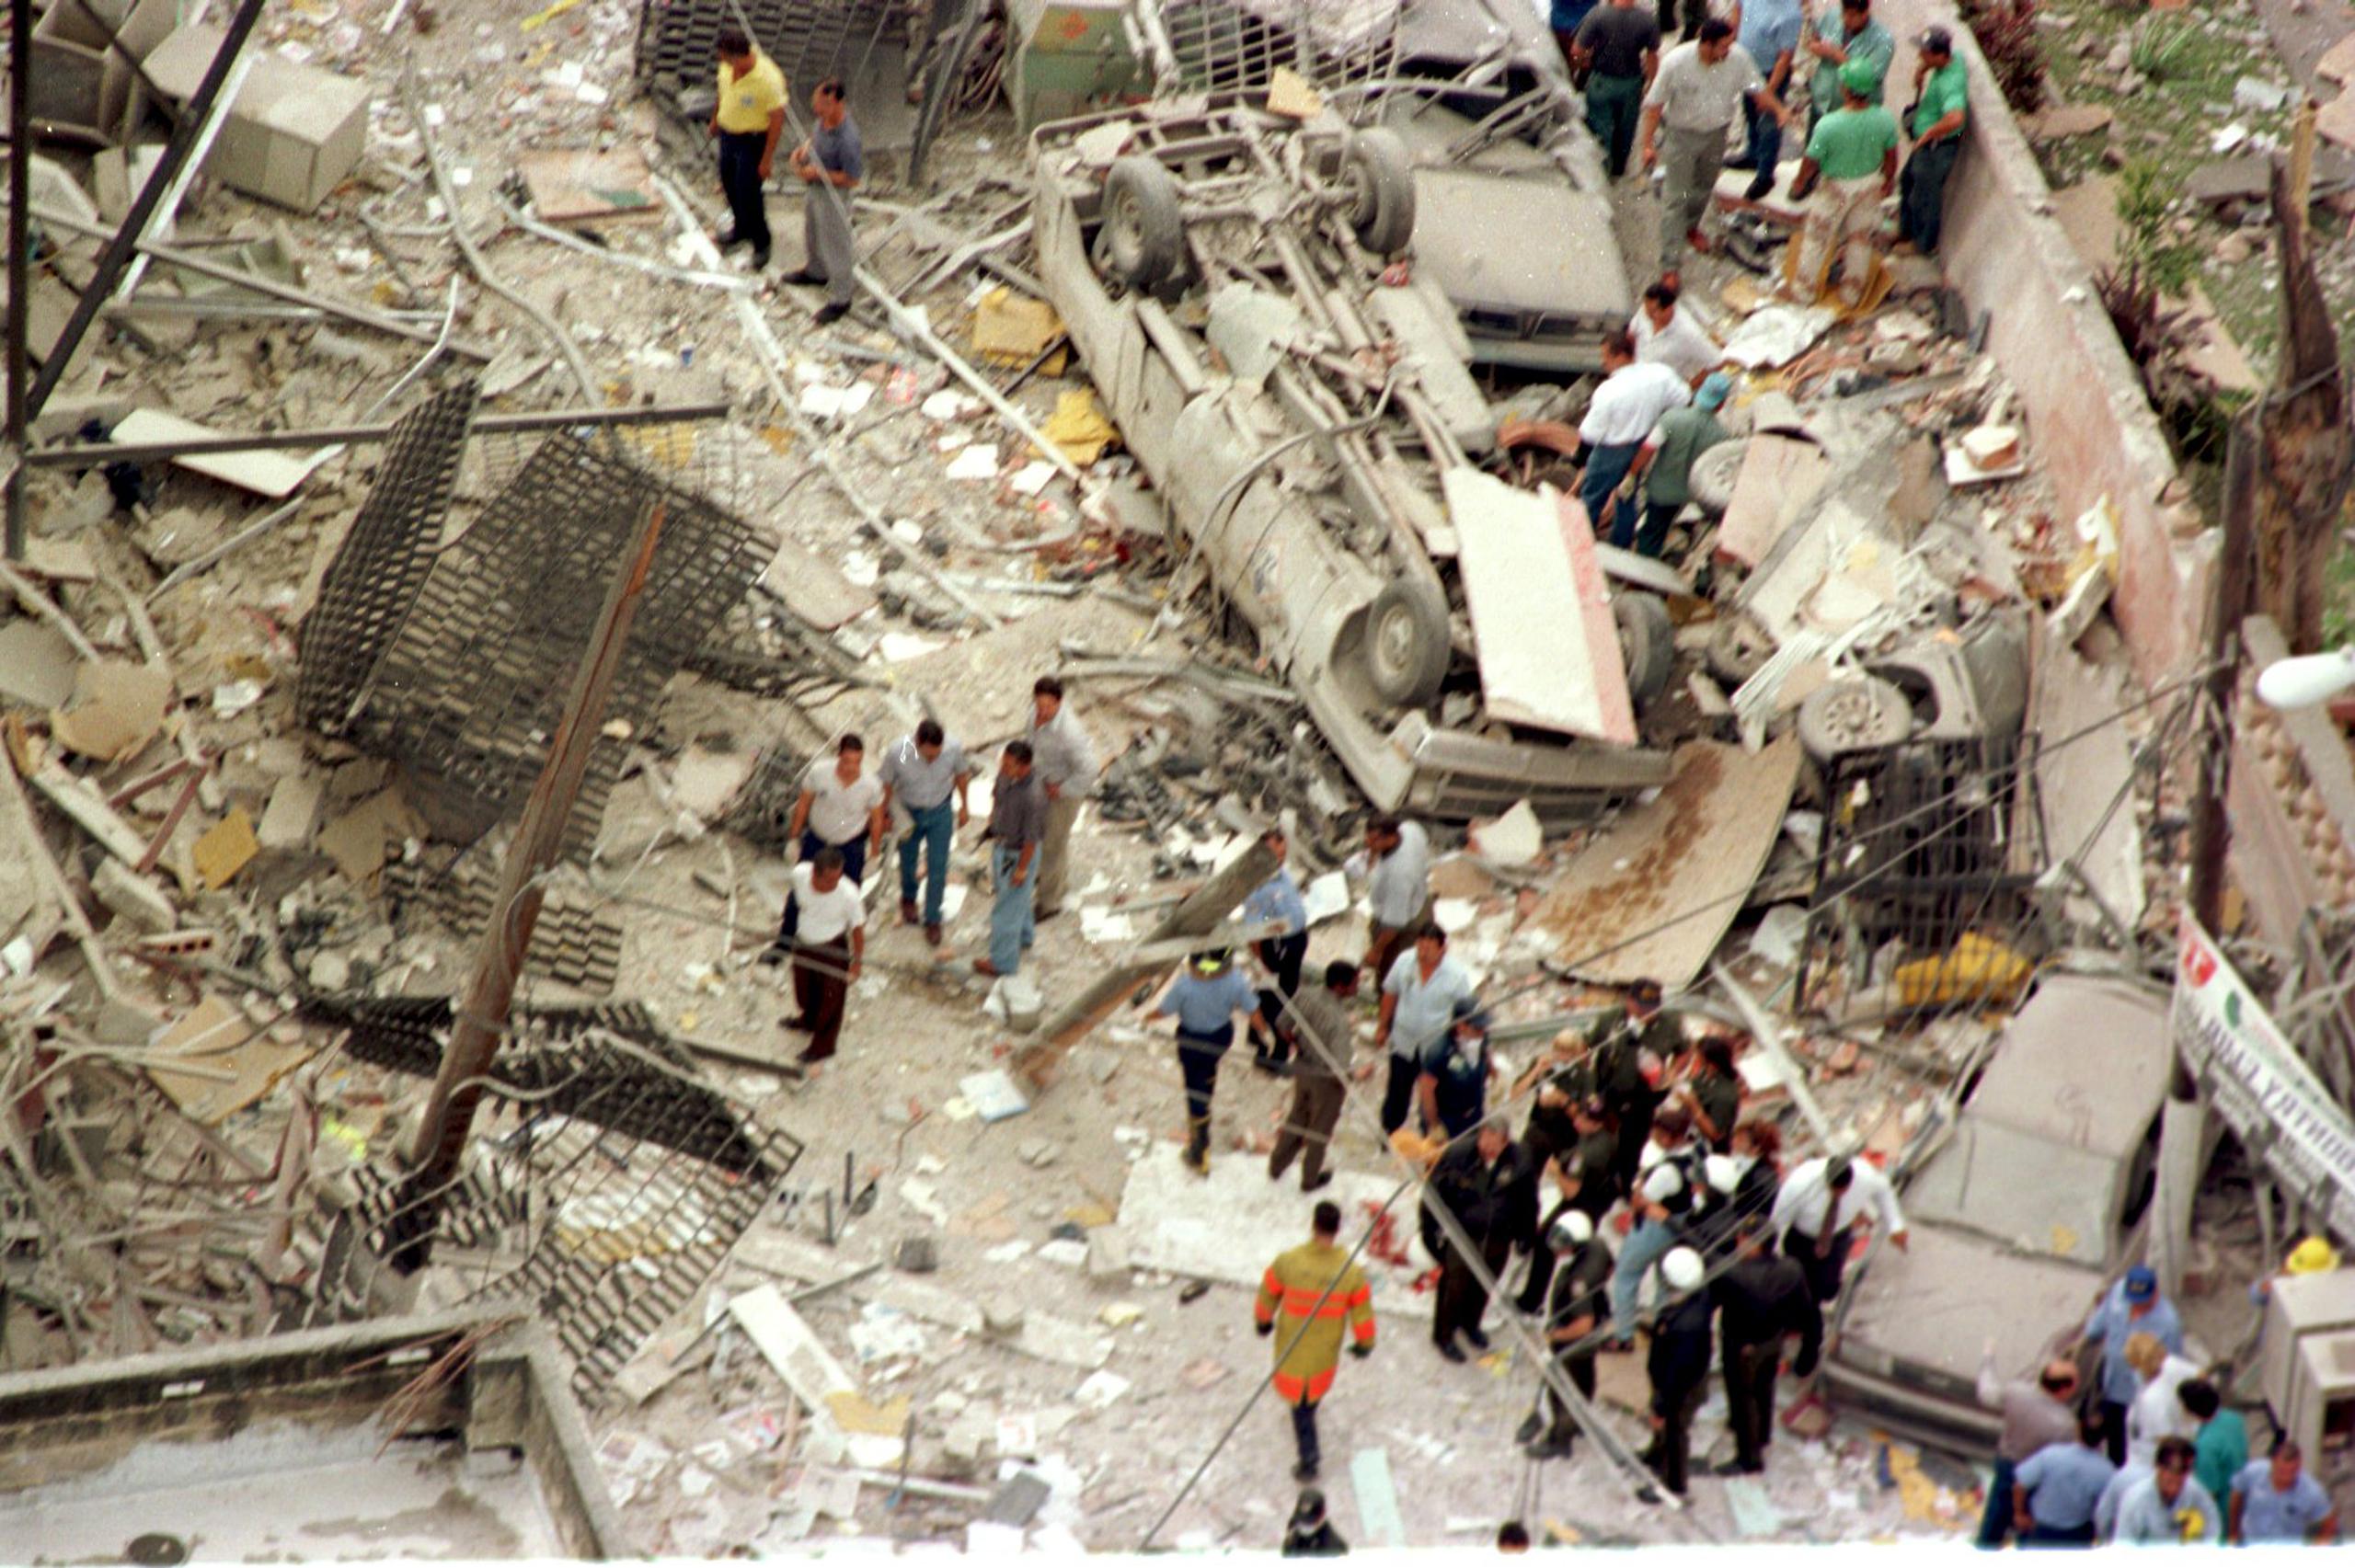 El 21 de noviembre de 1996, un escape de gas provocó una intensa explosión en la tienda Humberto Vidal, cuya onda expansiva afectó los comercios a su alrededor.